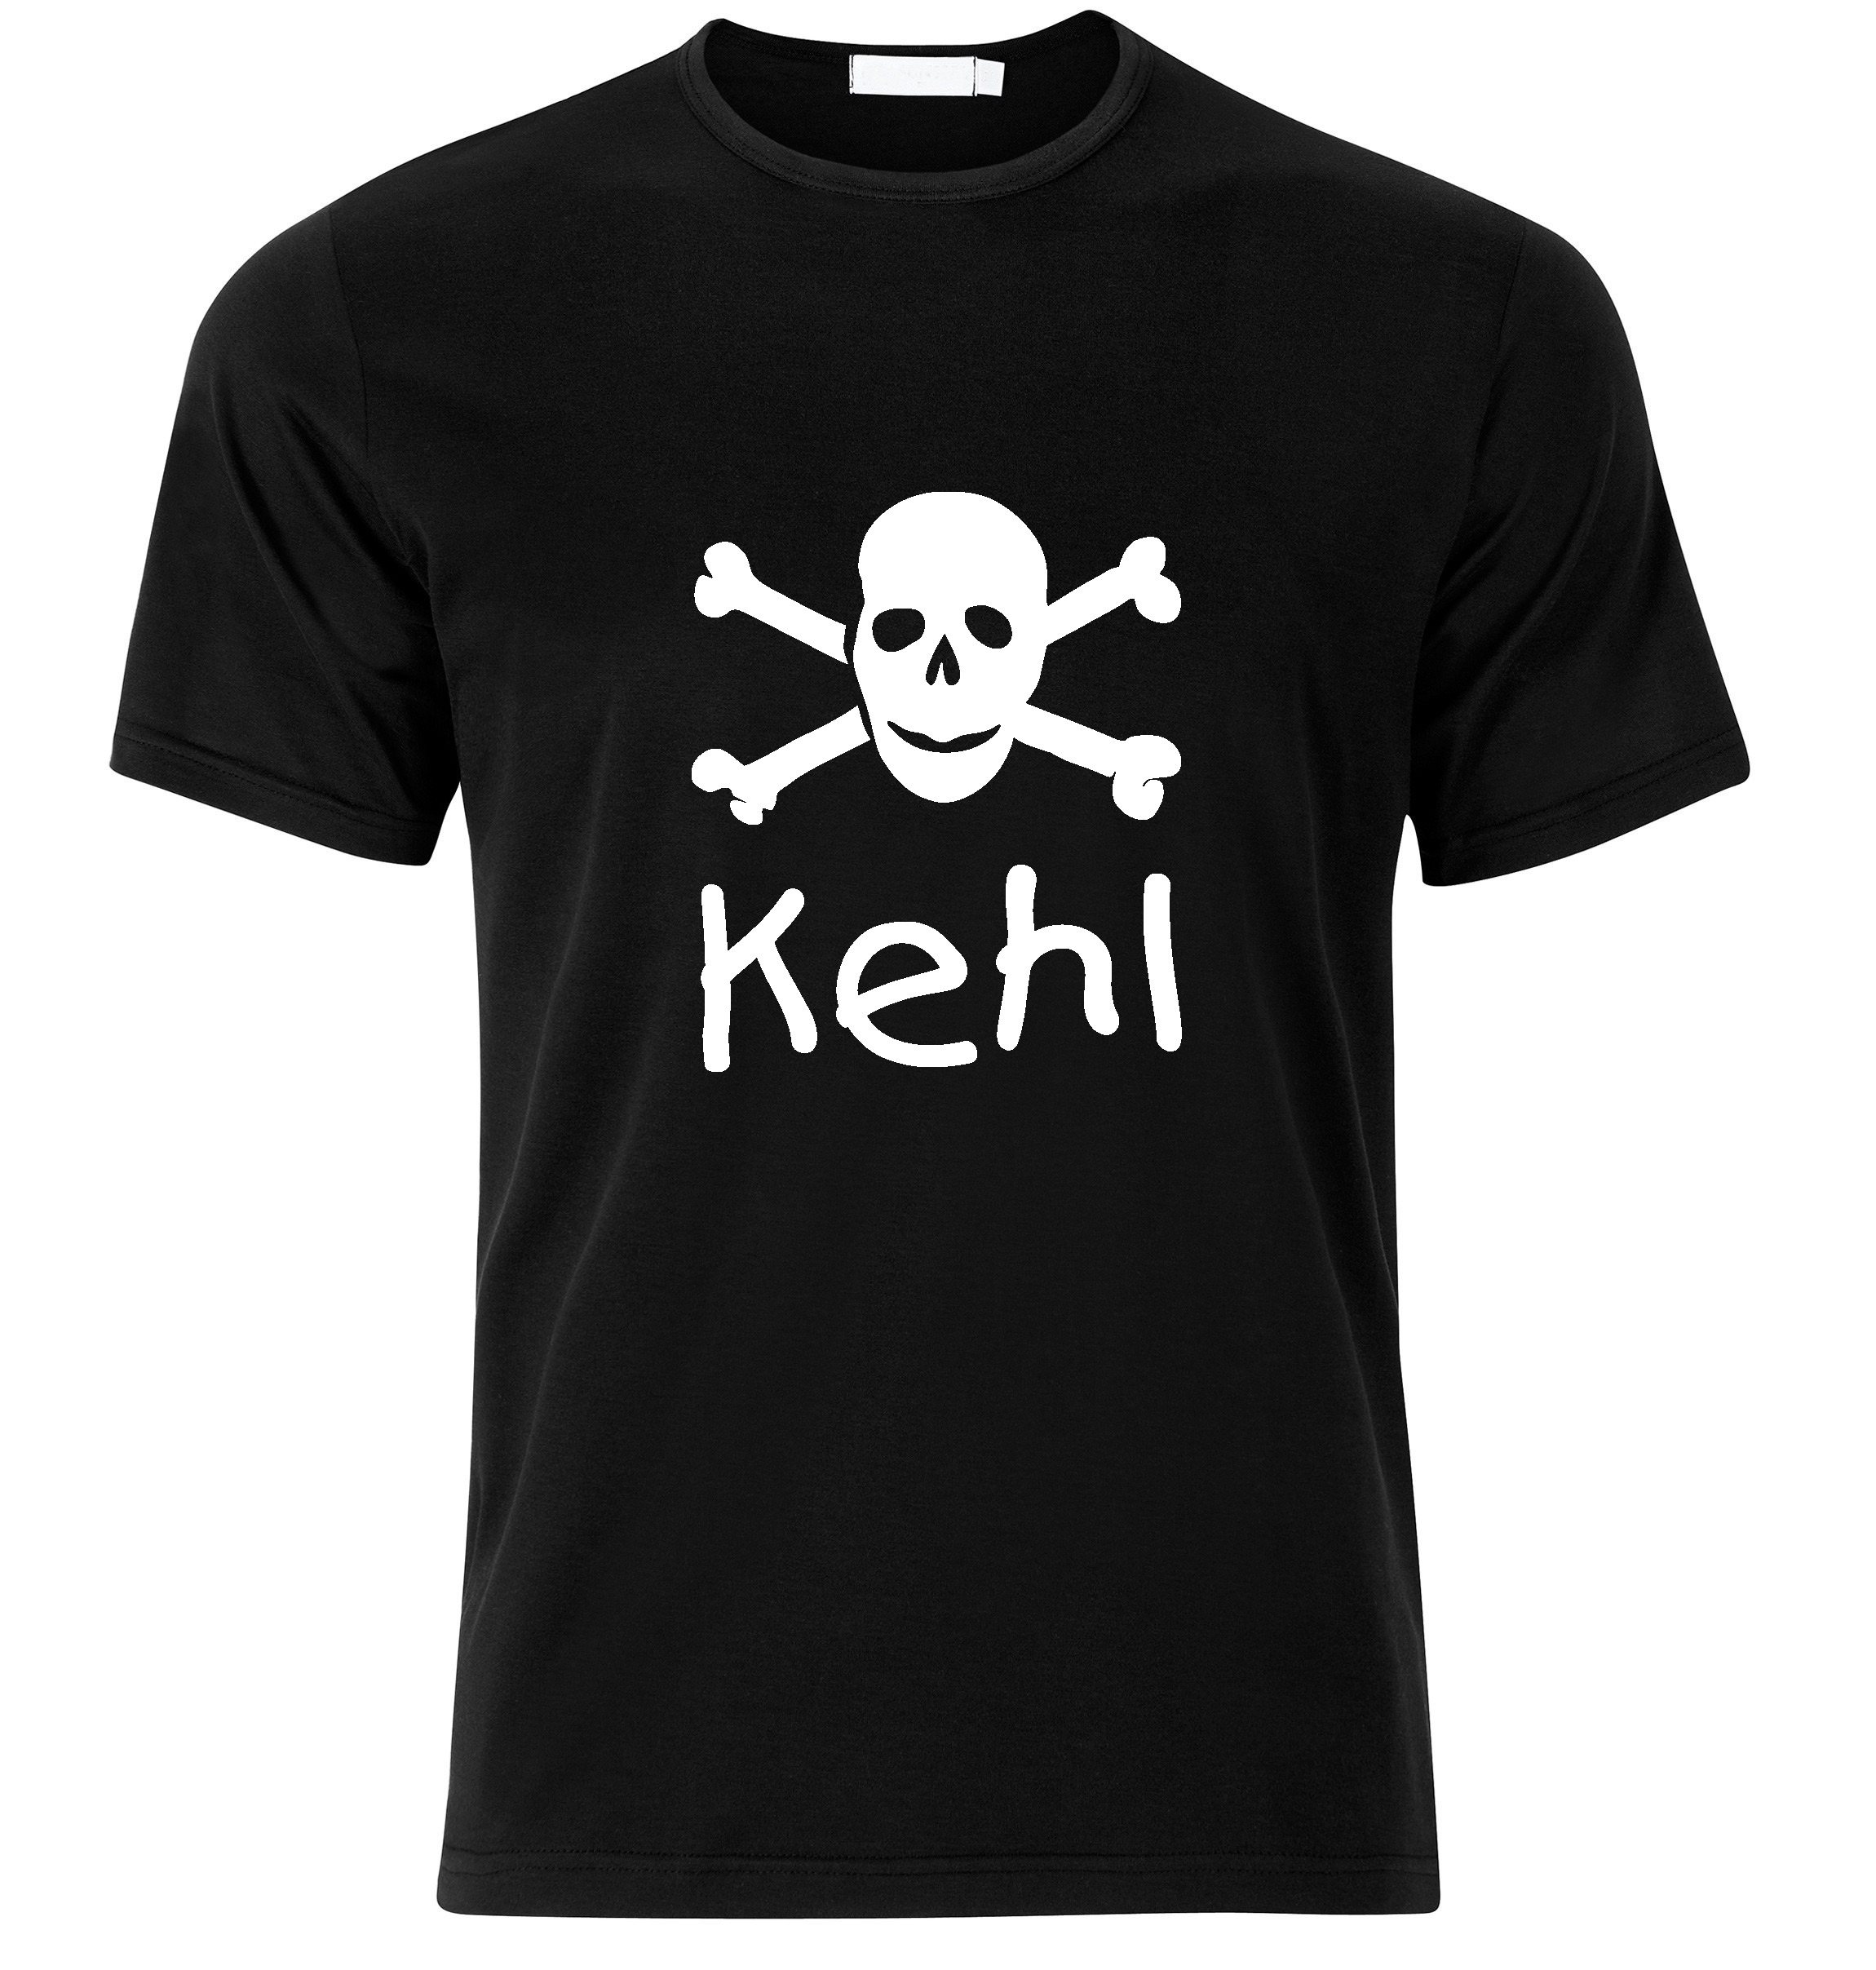 T-Shirt Kehl Jolly Roger, Totenkopf